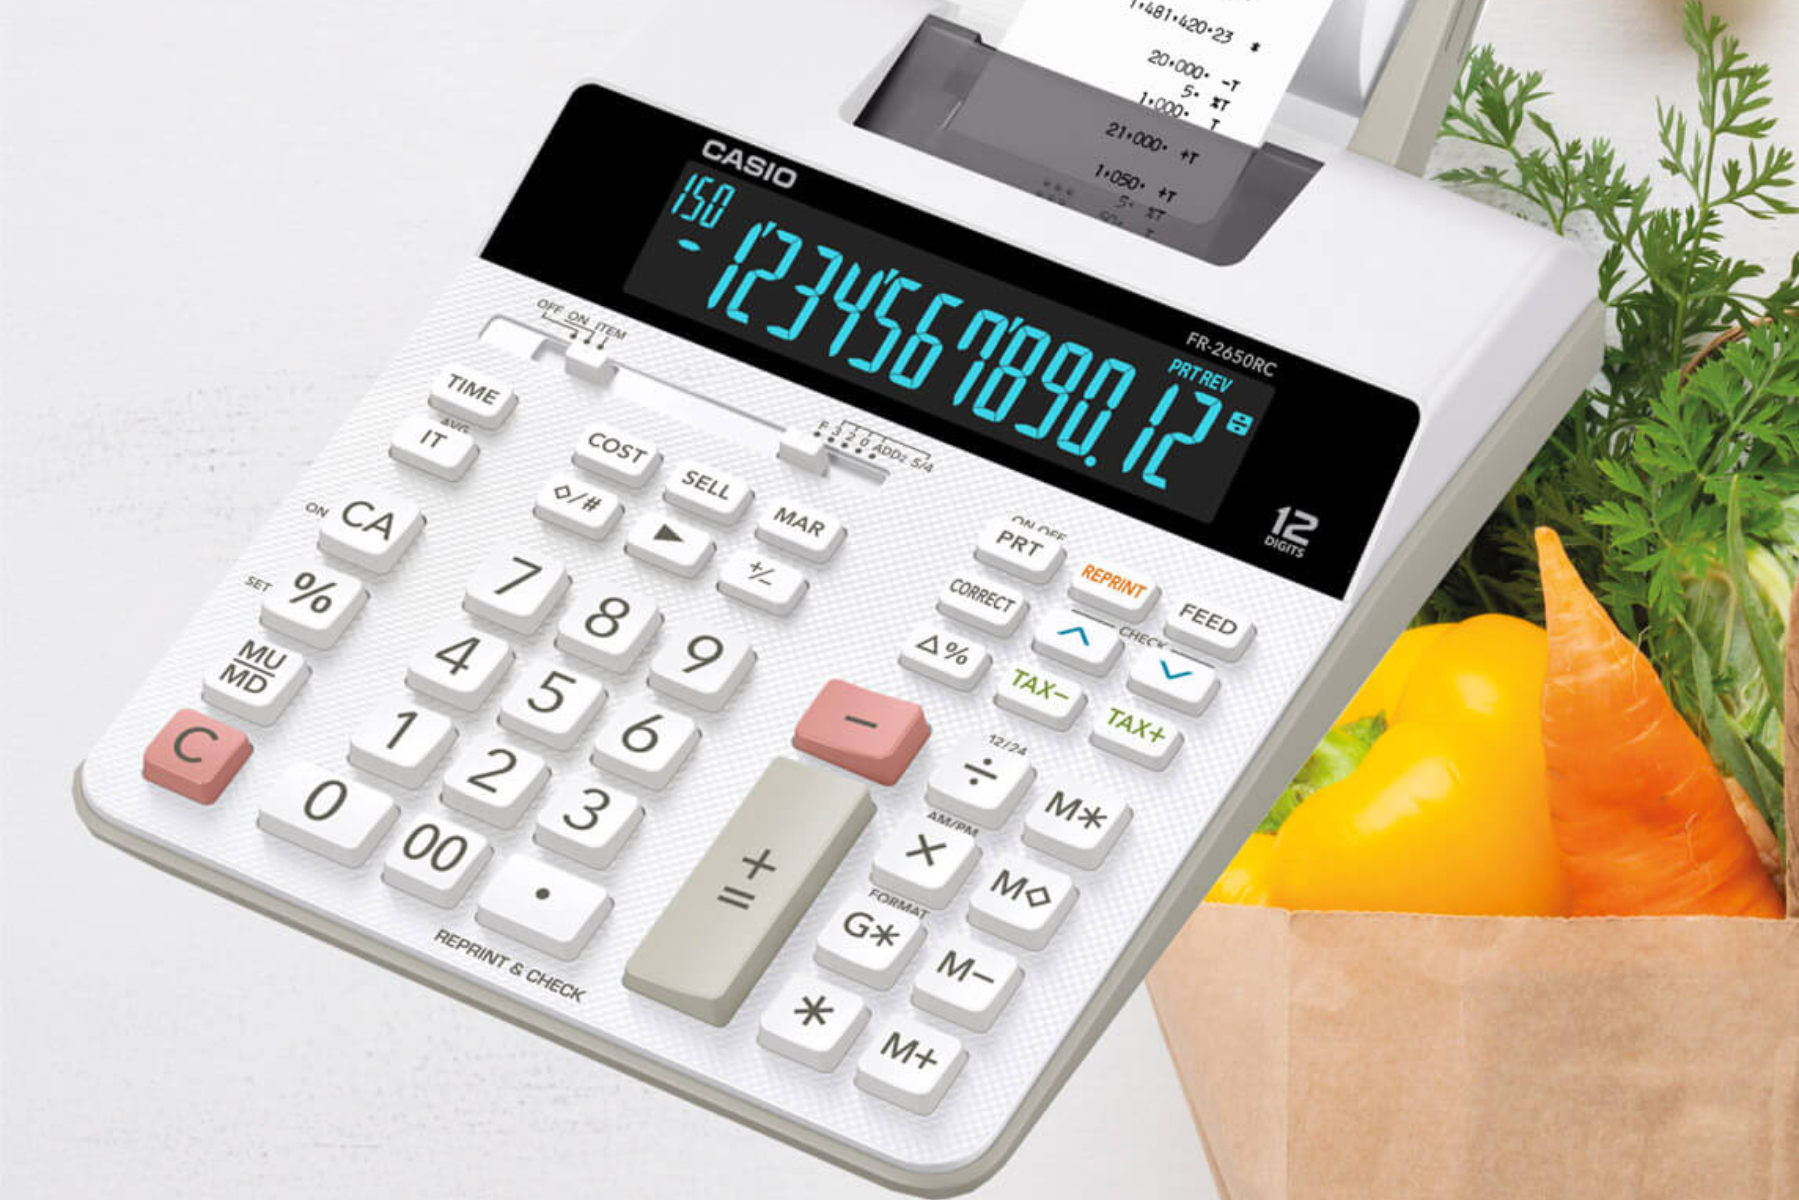 Stolná kalkulačka s tlačou Casio FR 2650 RC uvod